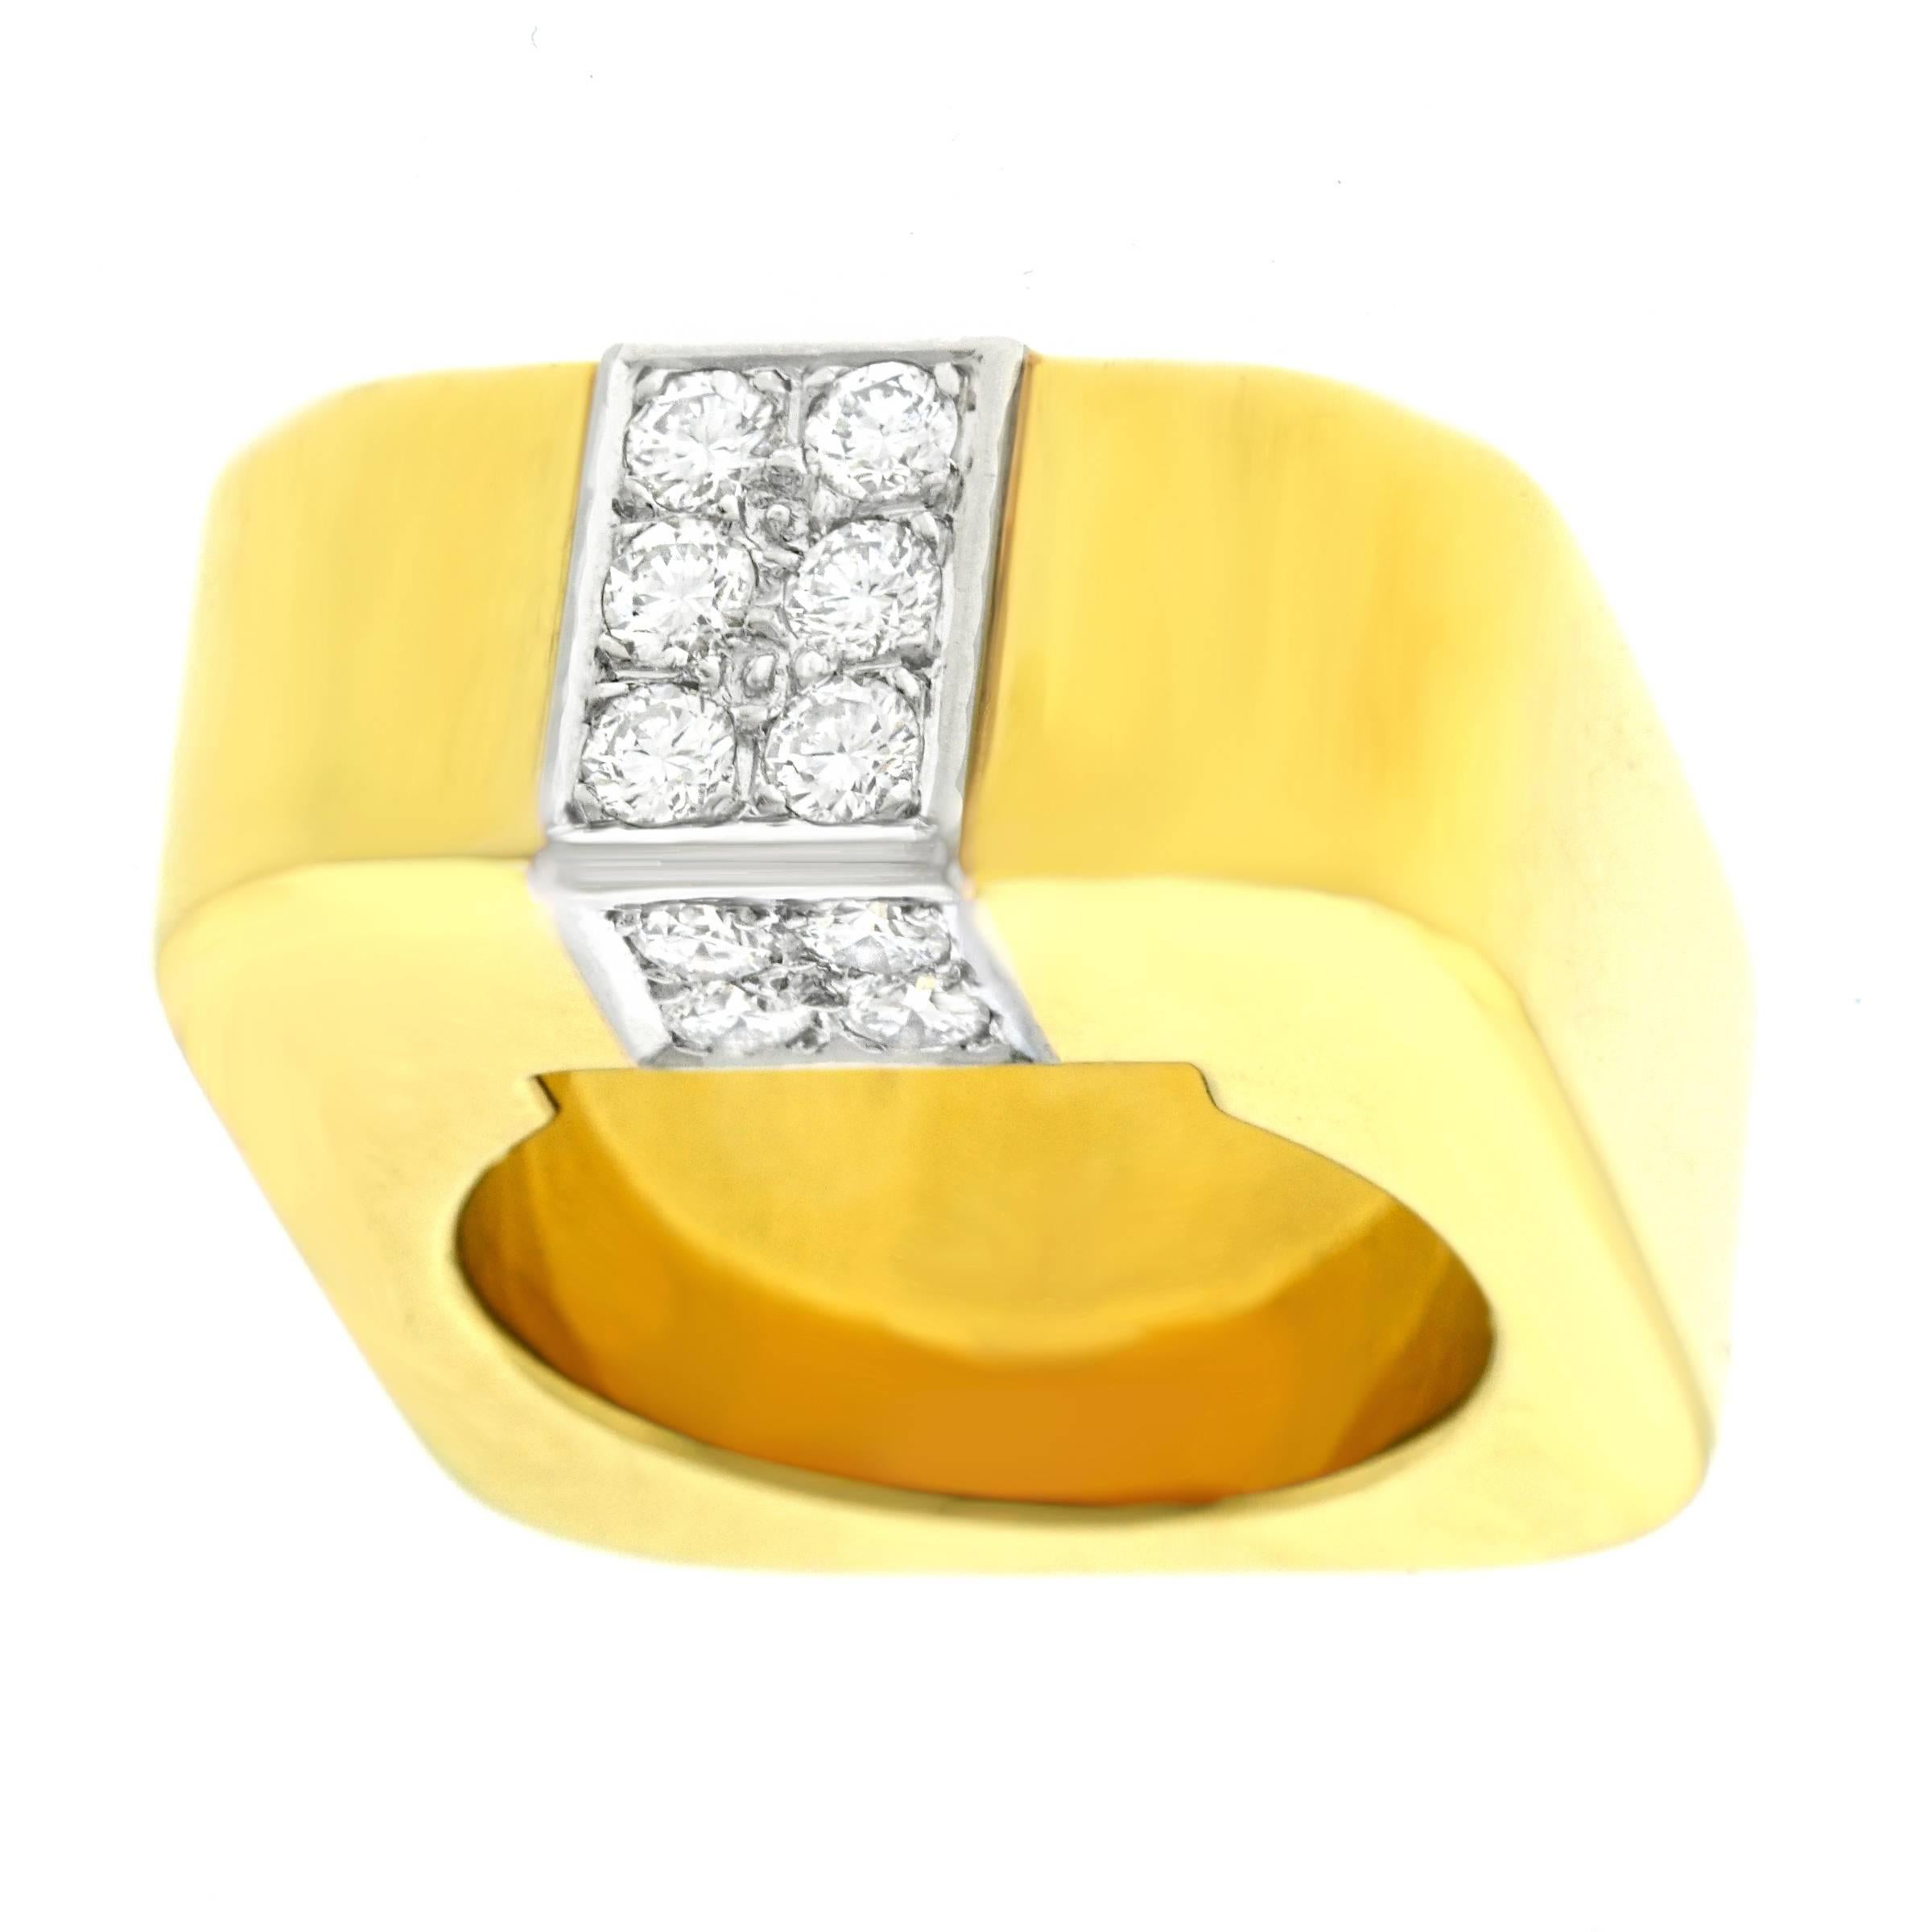 Weber & Cie Swiss Modern Diamond Set Gold Ring